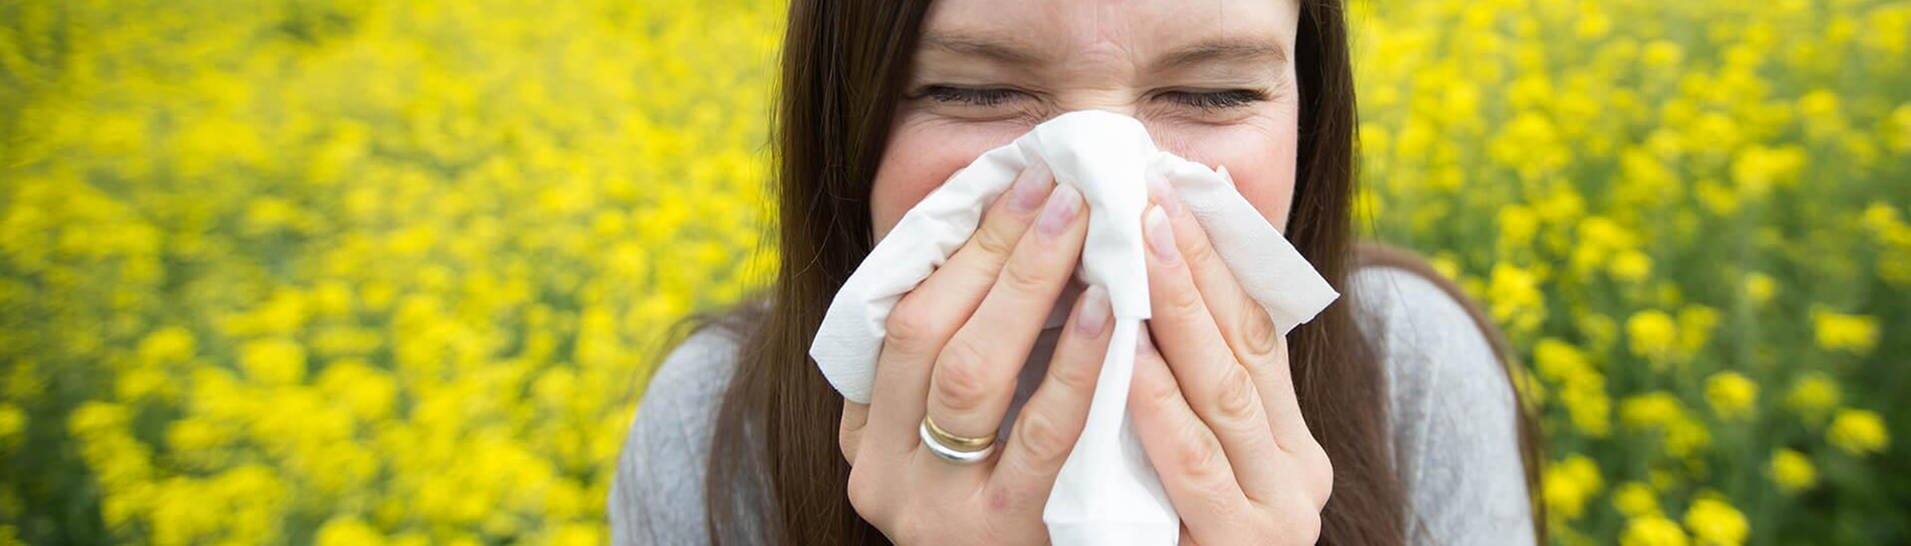 Pollen sind lästig – junge Frau mit Allergie putzt sich die Nase